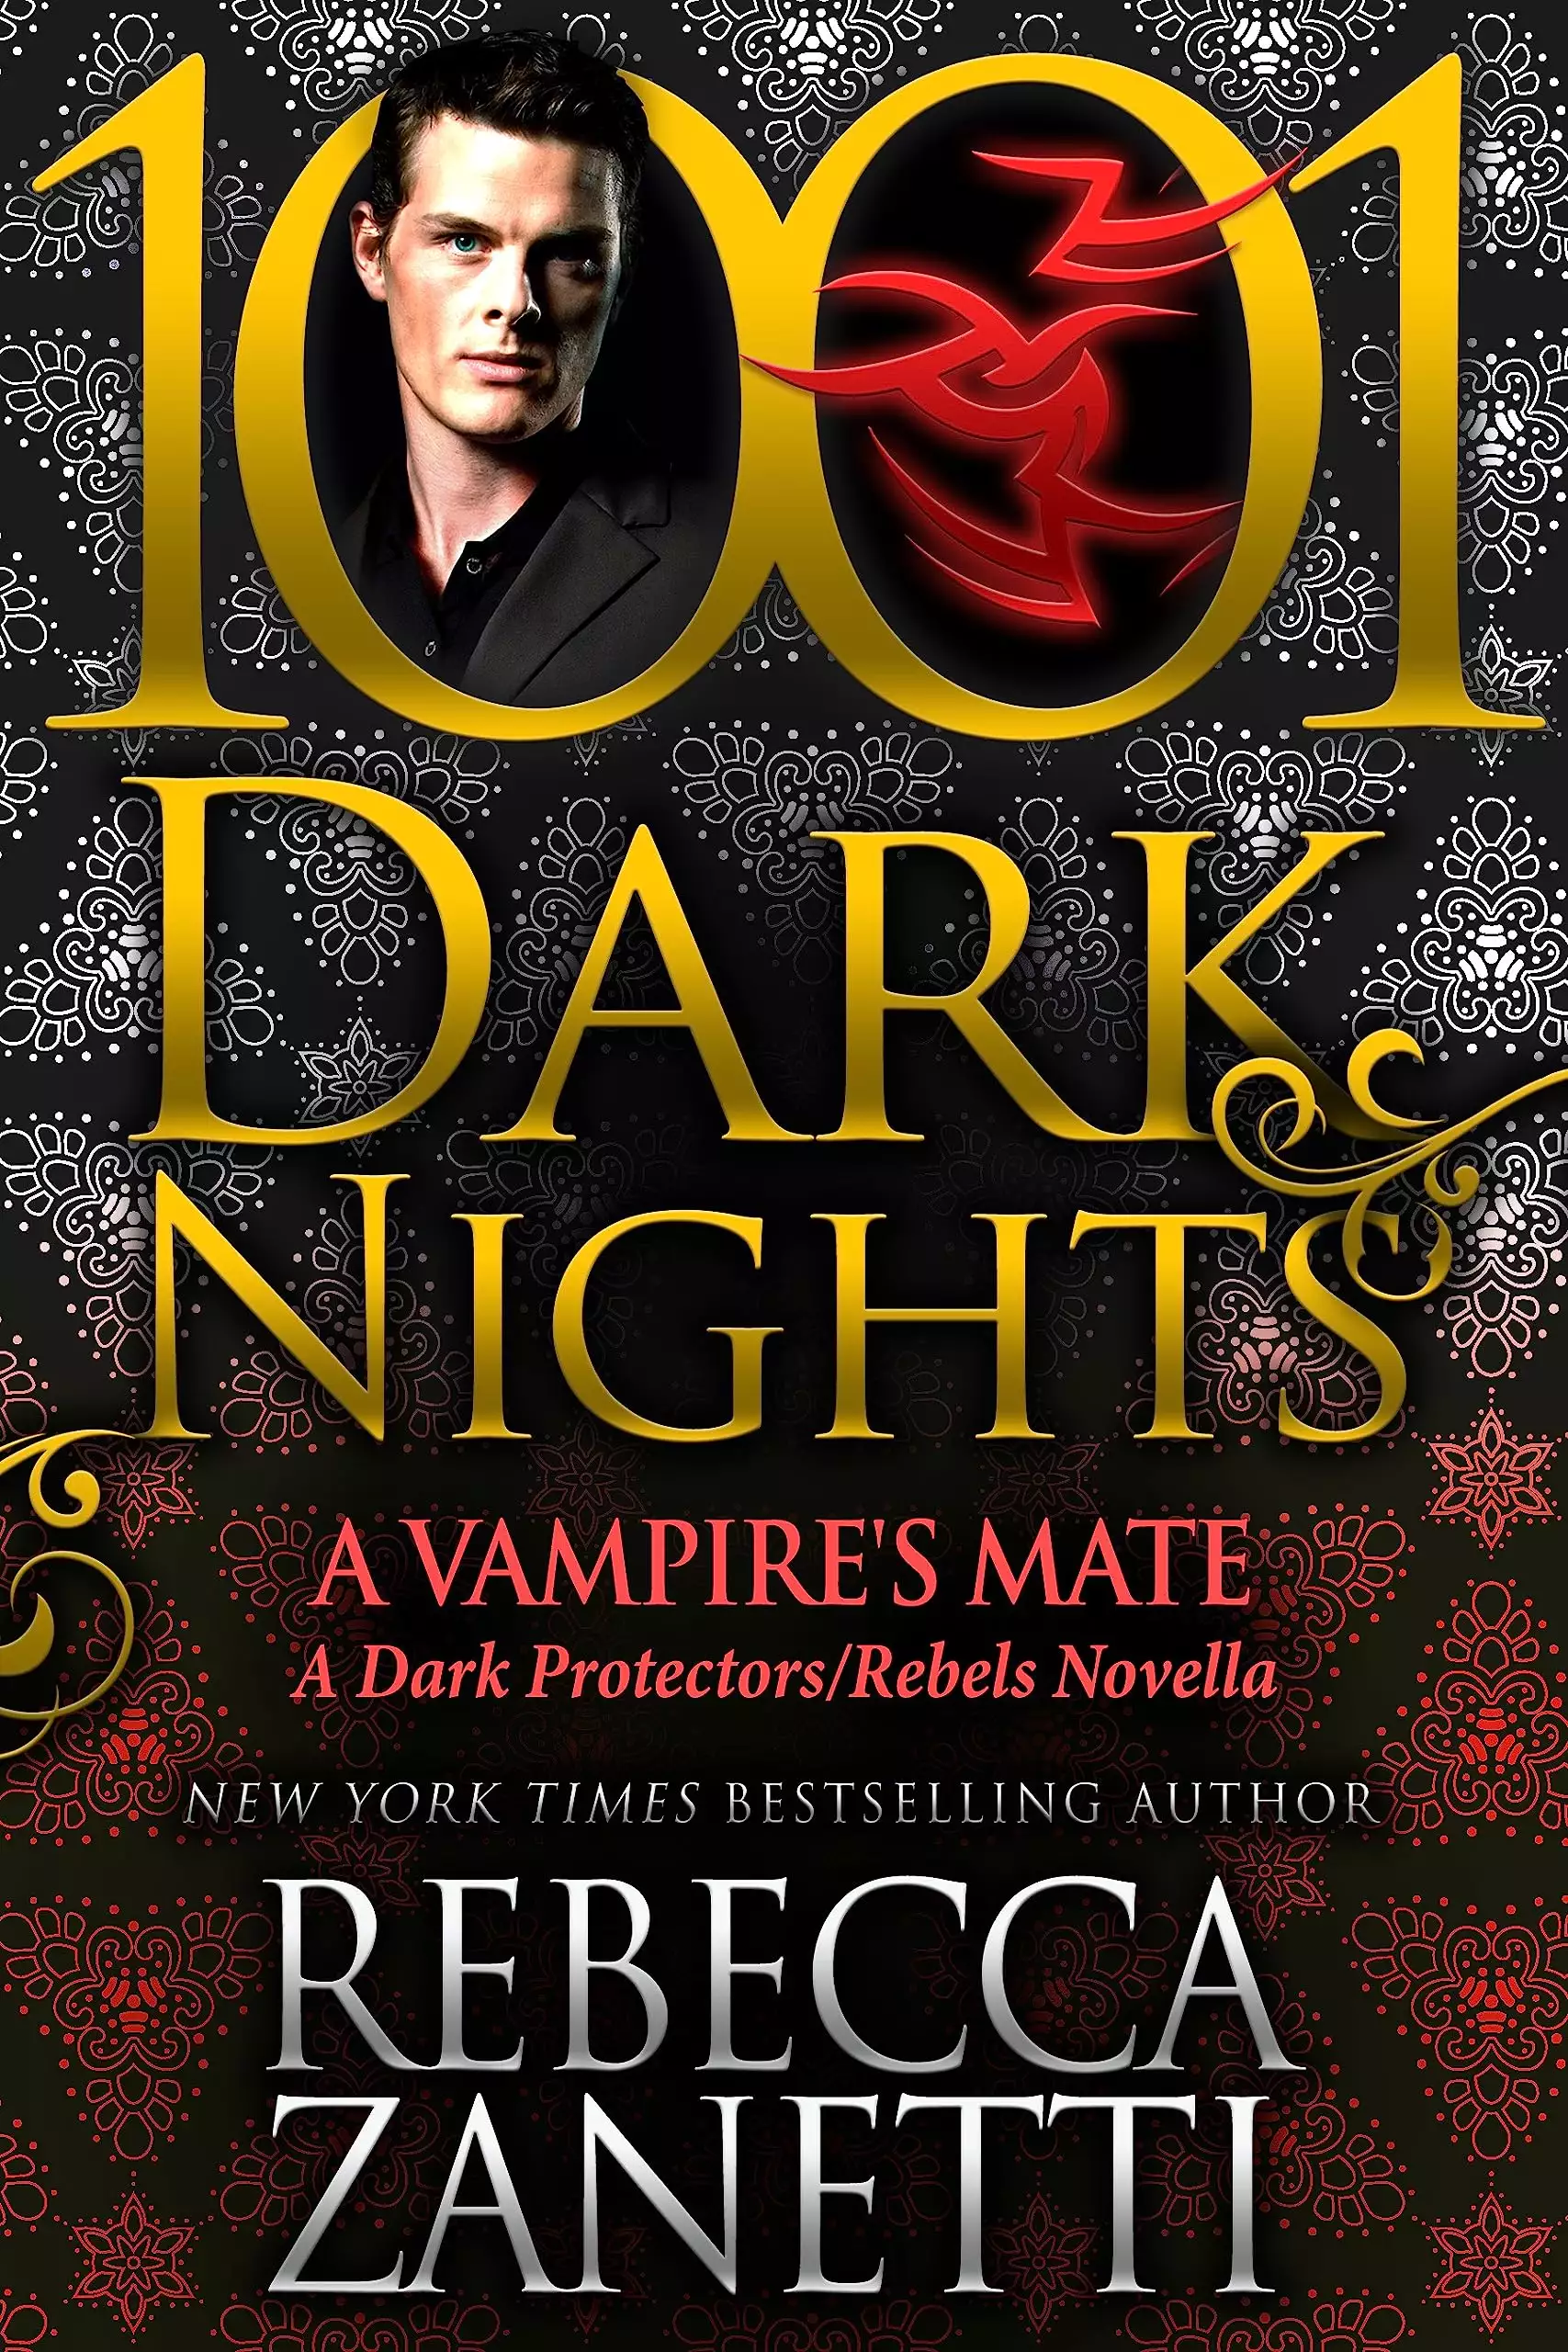 A Vampire’s Mate: A Dark Protectors/Rebels Novella